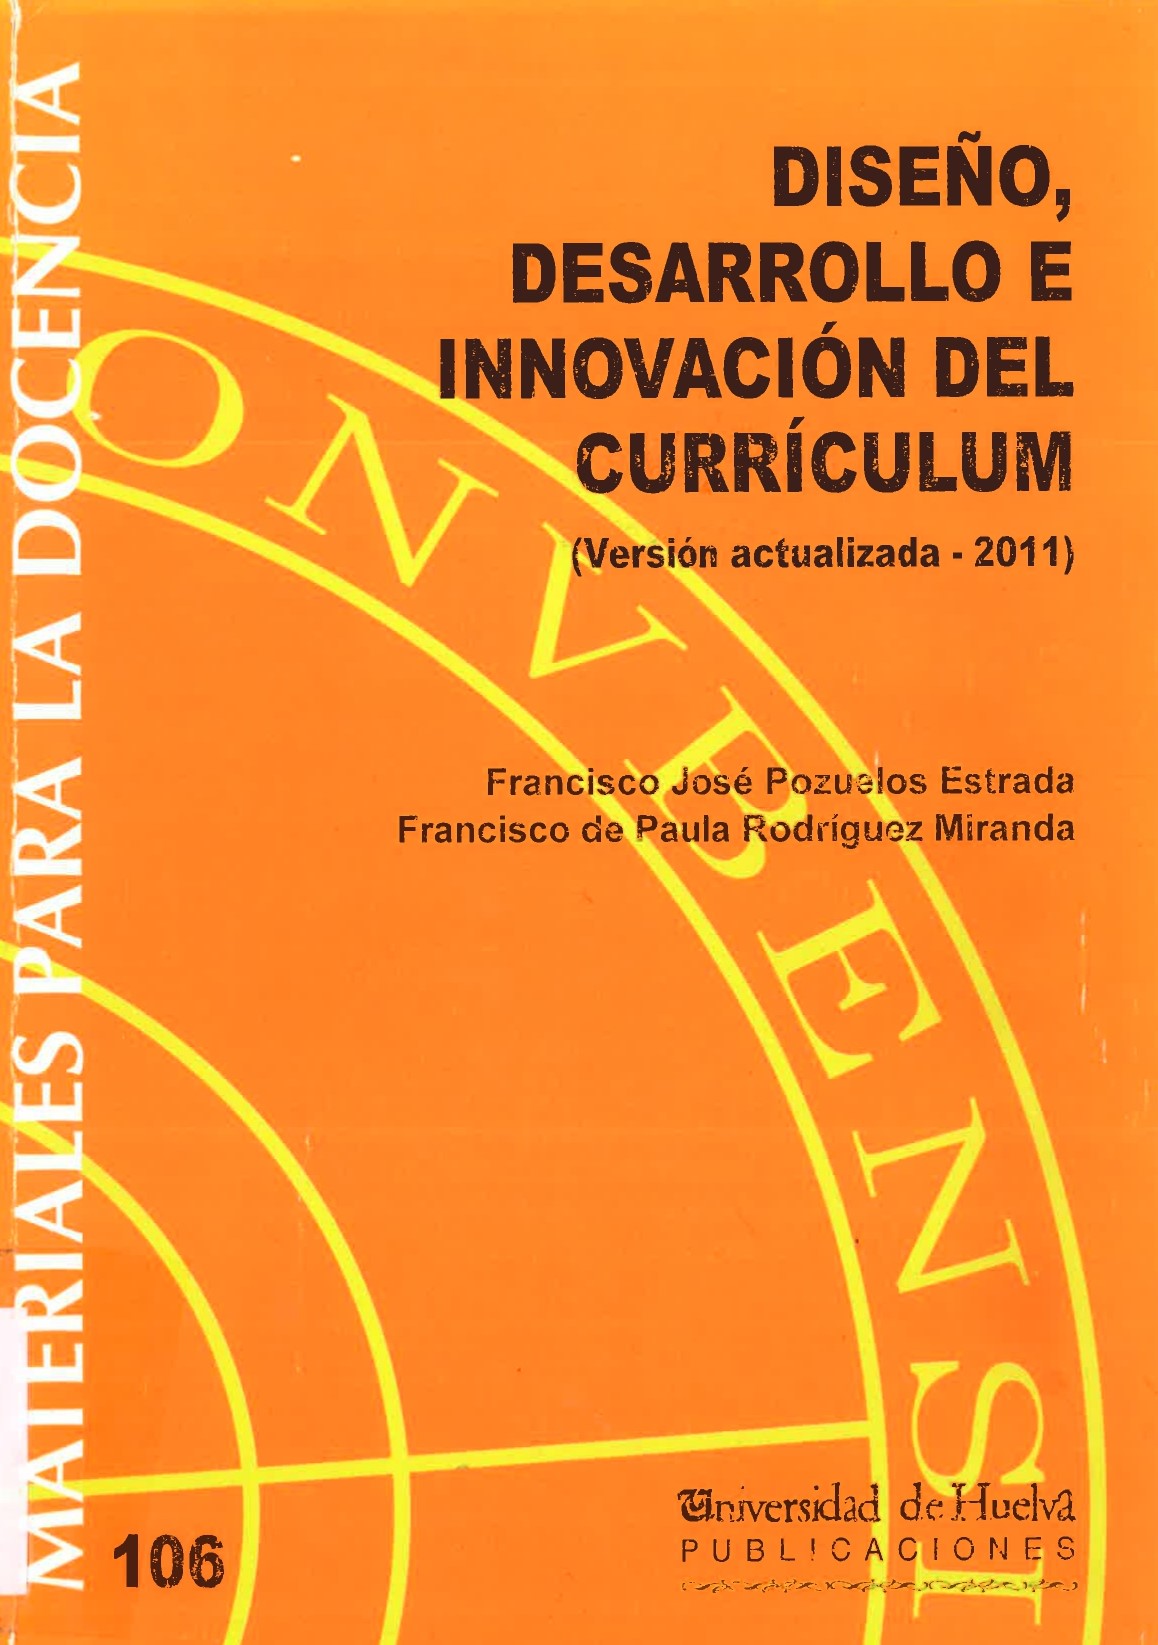 Imagen de portada del libro Diseño, Desarrollo e Innovación del Currículum